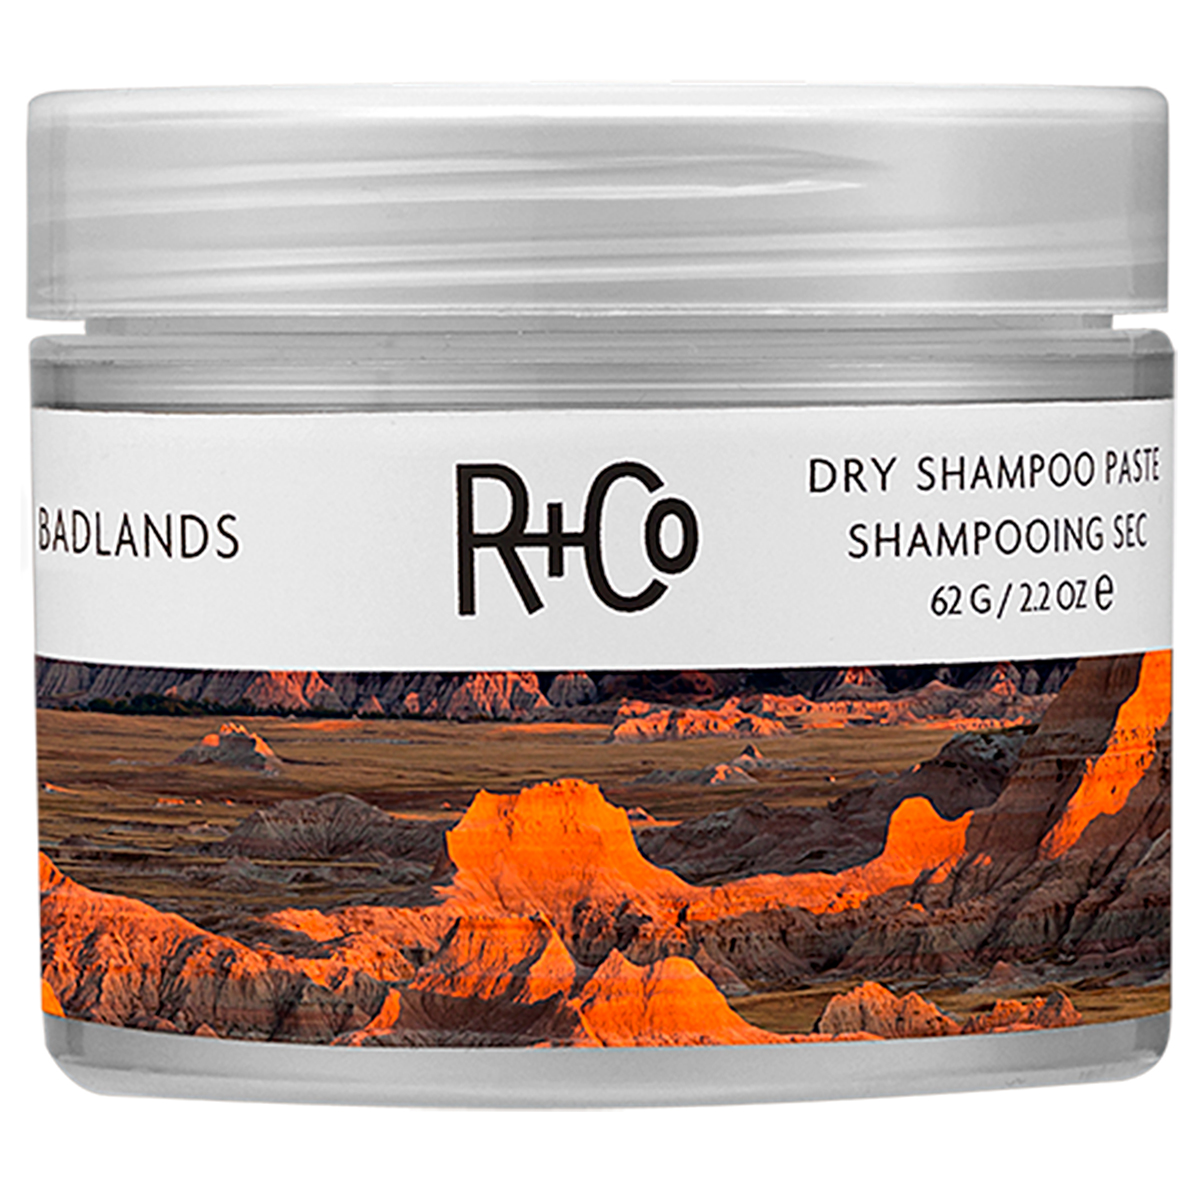 Badlands Dry Shampoo Paste,  62 g R+CO Torrschampo